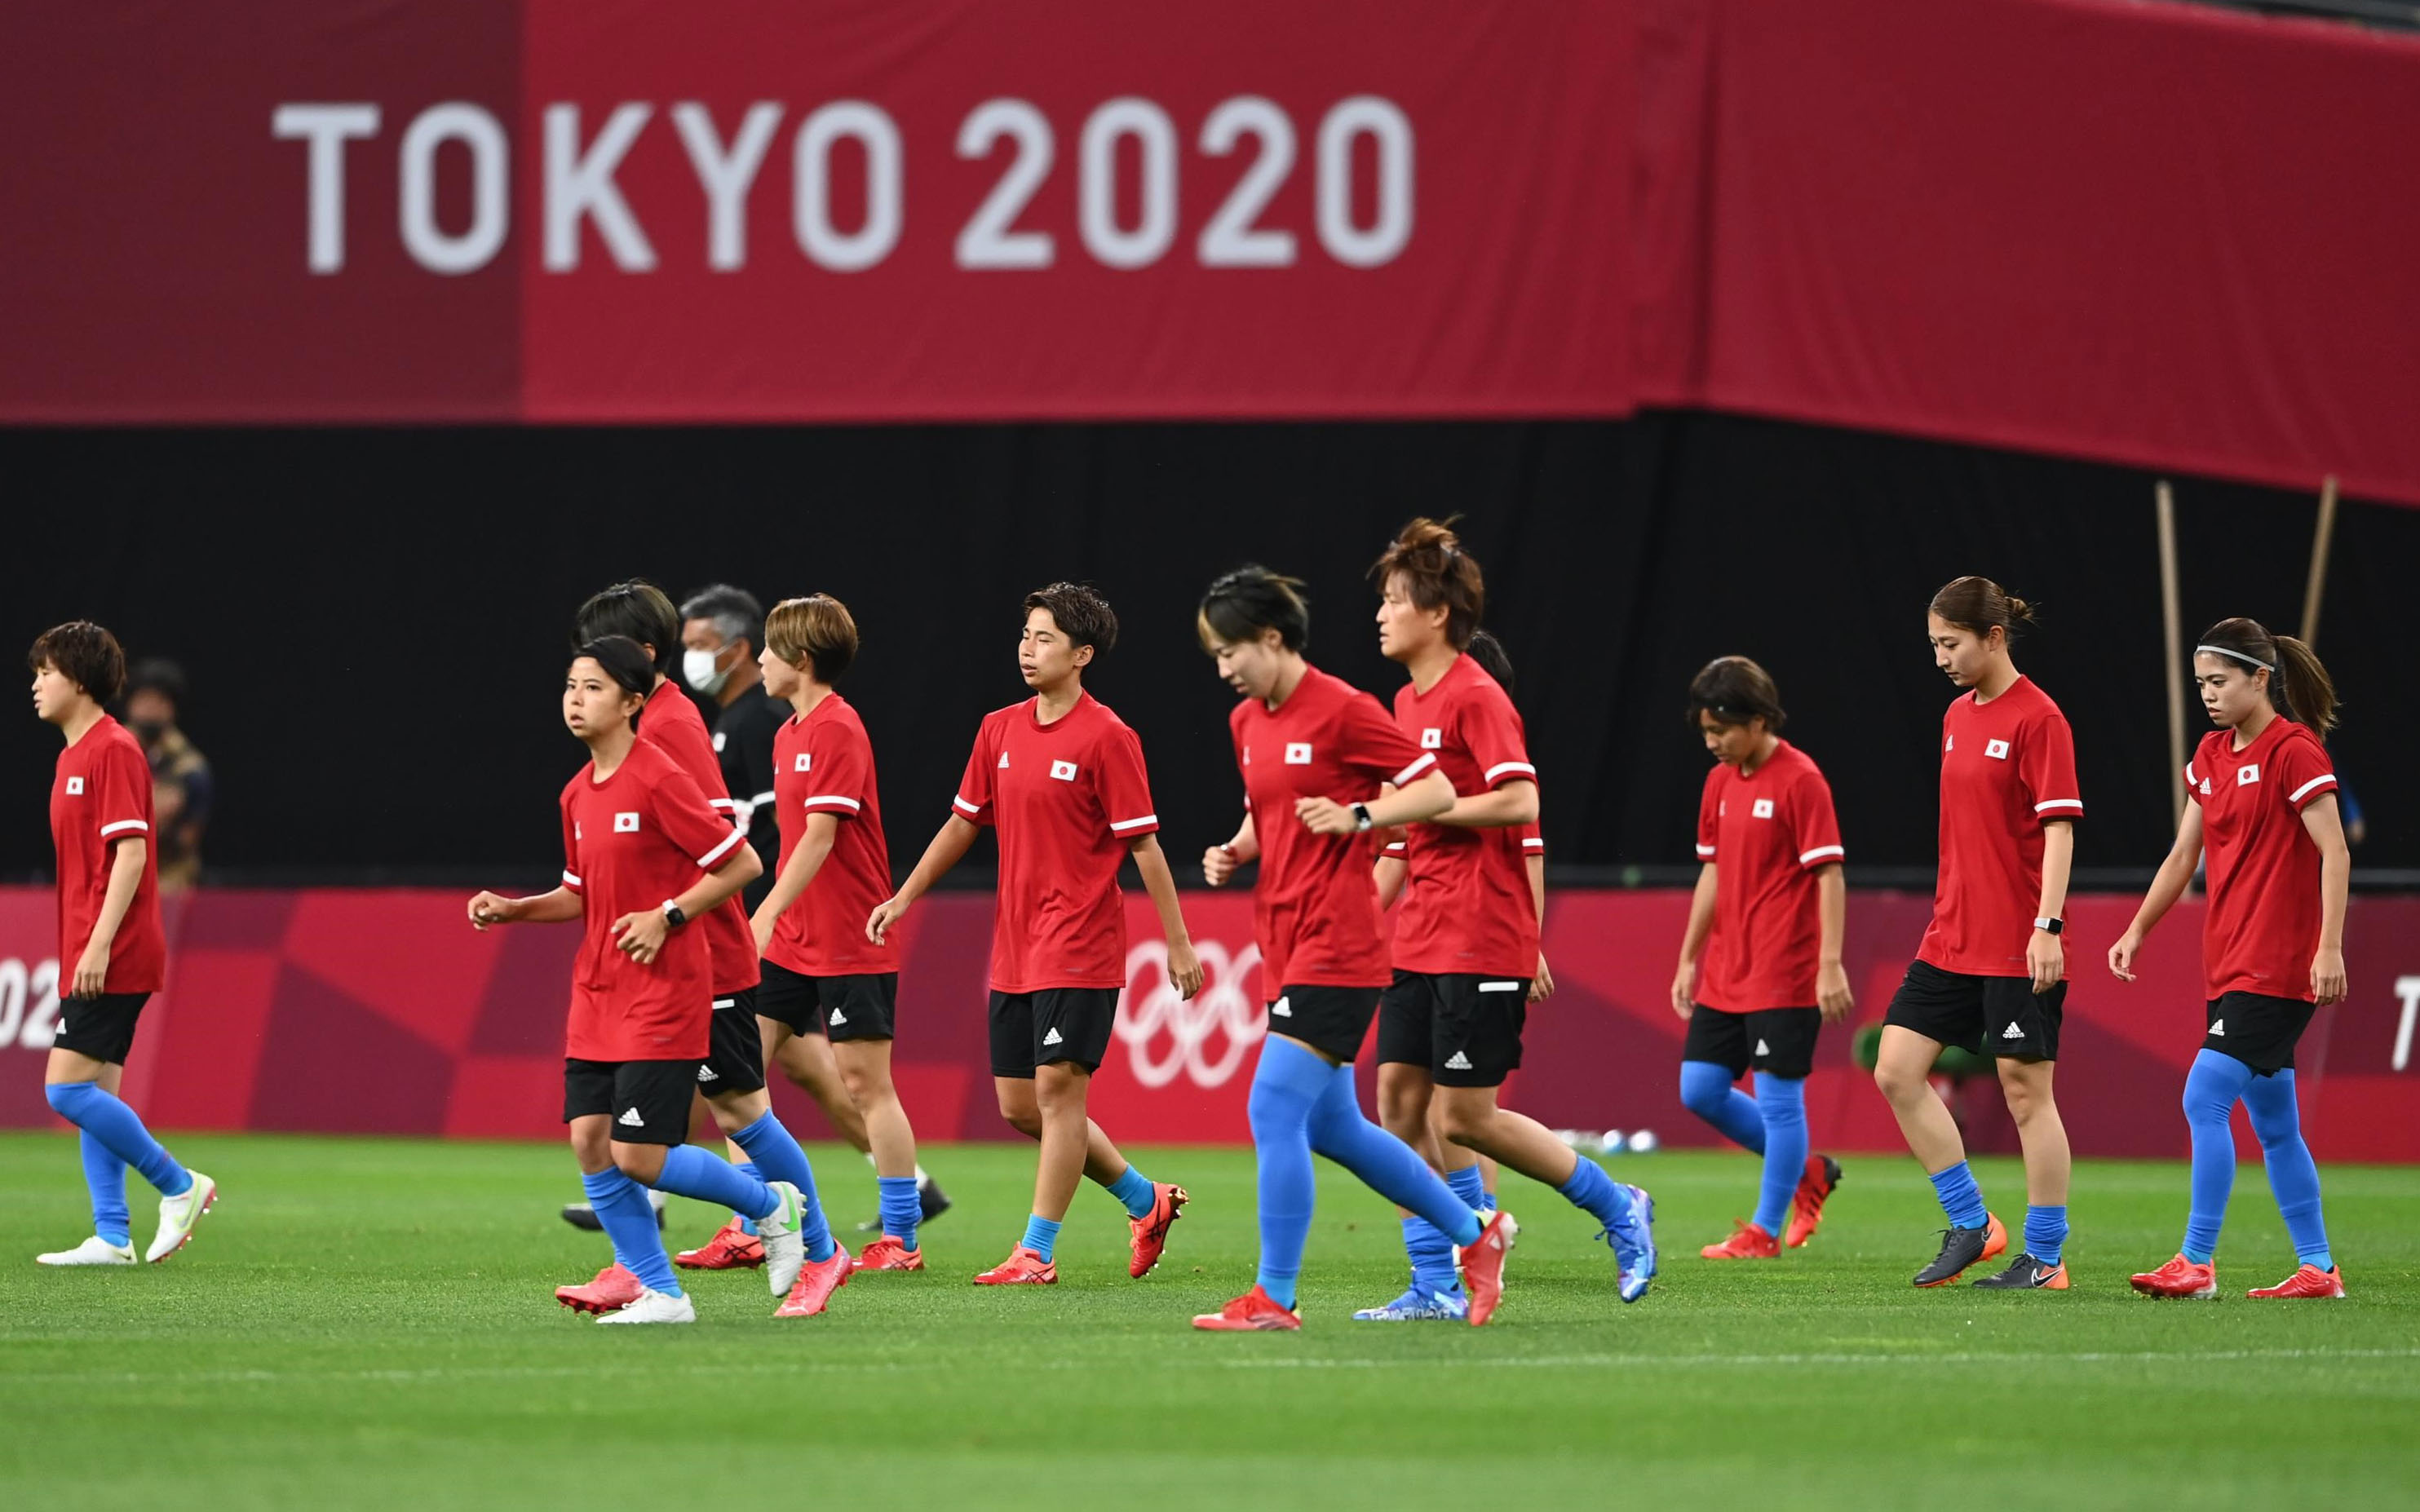 日経 写真映像 Na Tviteru 東京オリンピック 札幌ドームではサッカー女子日本代表 なでしこジャパン のメンバーがピッチに登場しました 午後7時30分からカナダとの試合が無観客で始まります 東京五輪ビジュアルリポートはこちら T Co Ix0whuaawv